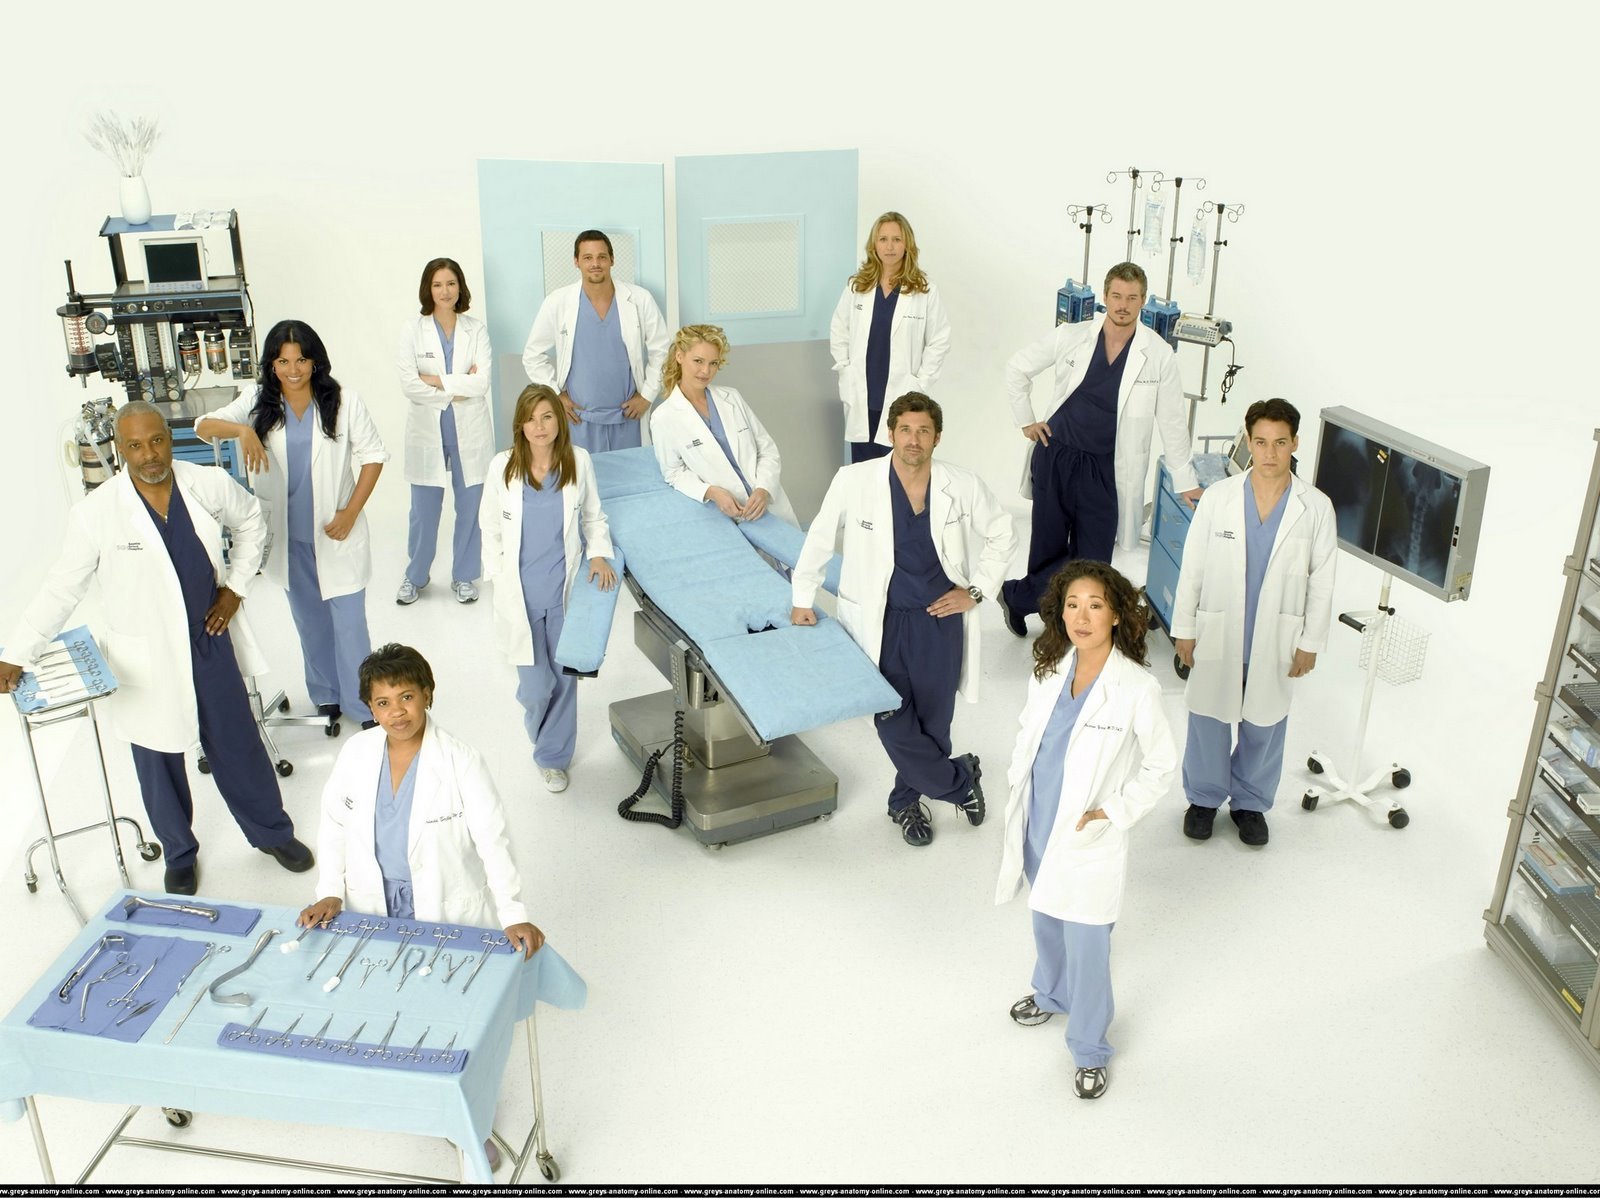 Grey's Anatomy TV Show: Cast of Grey's Anatomy